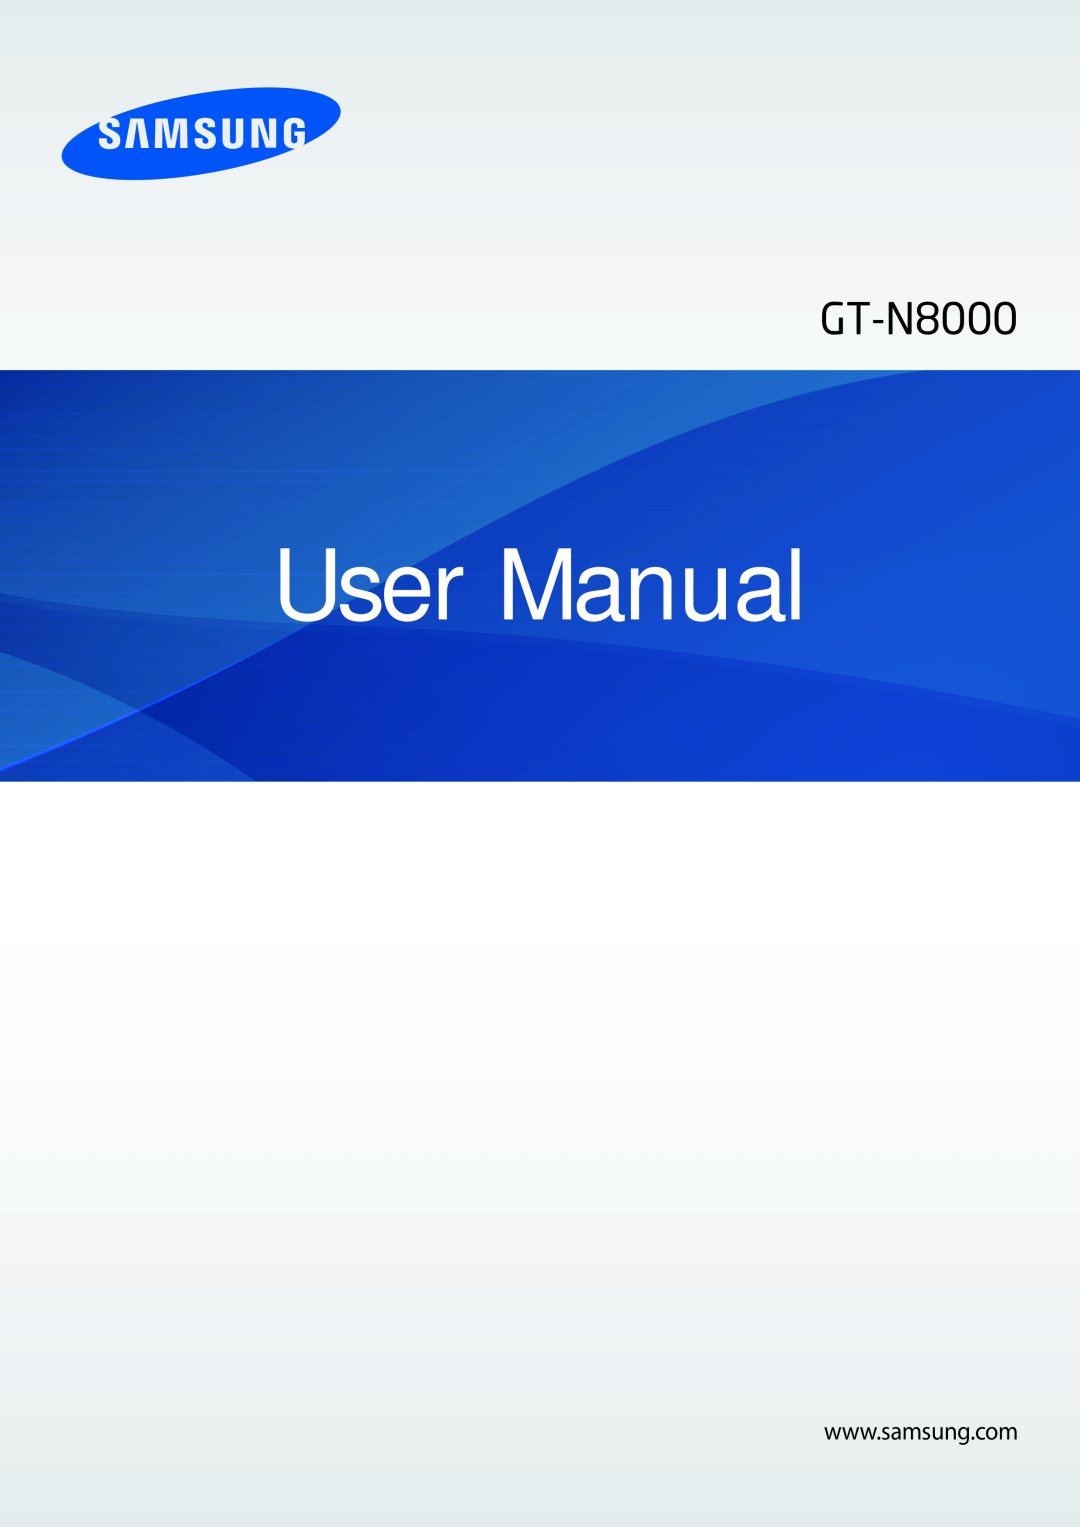 Samsung GT-N8000EAAVD2, GT-N8000ZWAVD2, GT-N8000EAAITV, GT-N8000EAADBT, GT-N8000EAATMN, GT-N8000EAAEUR manual User Manual 